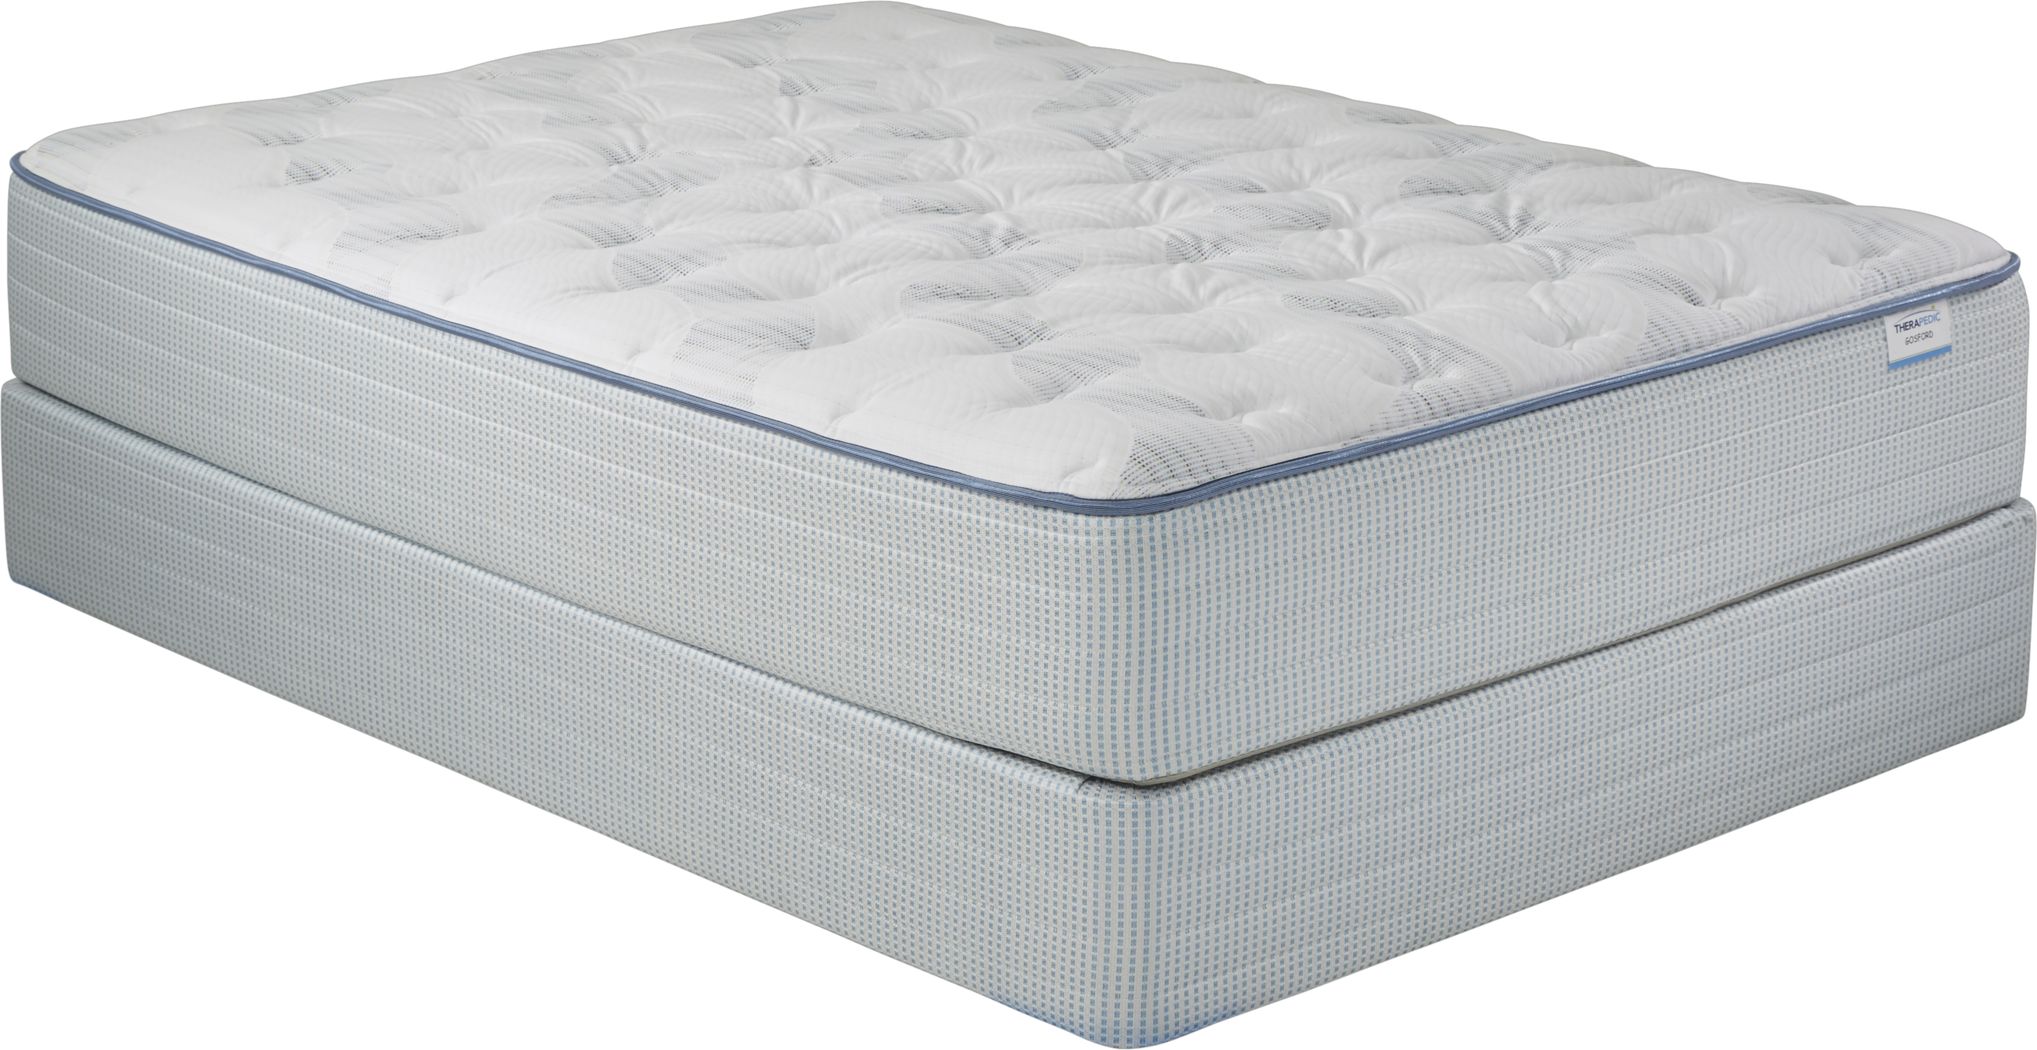 night therapy full mattress set